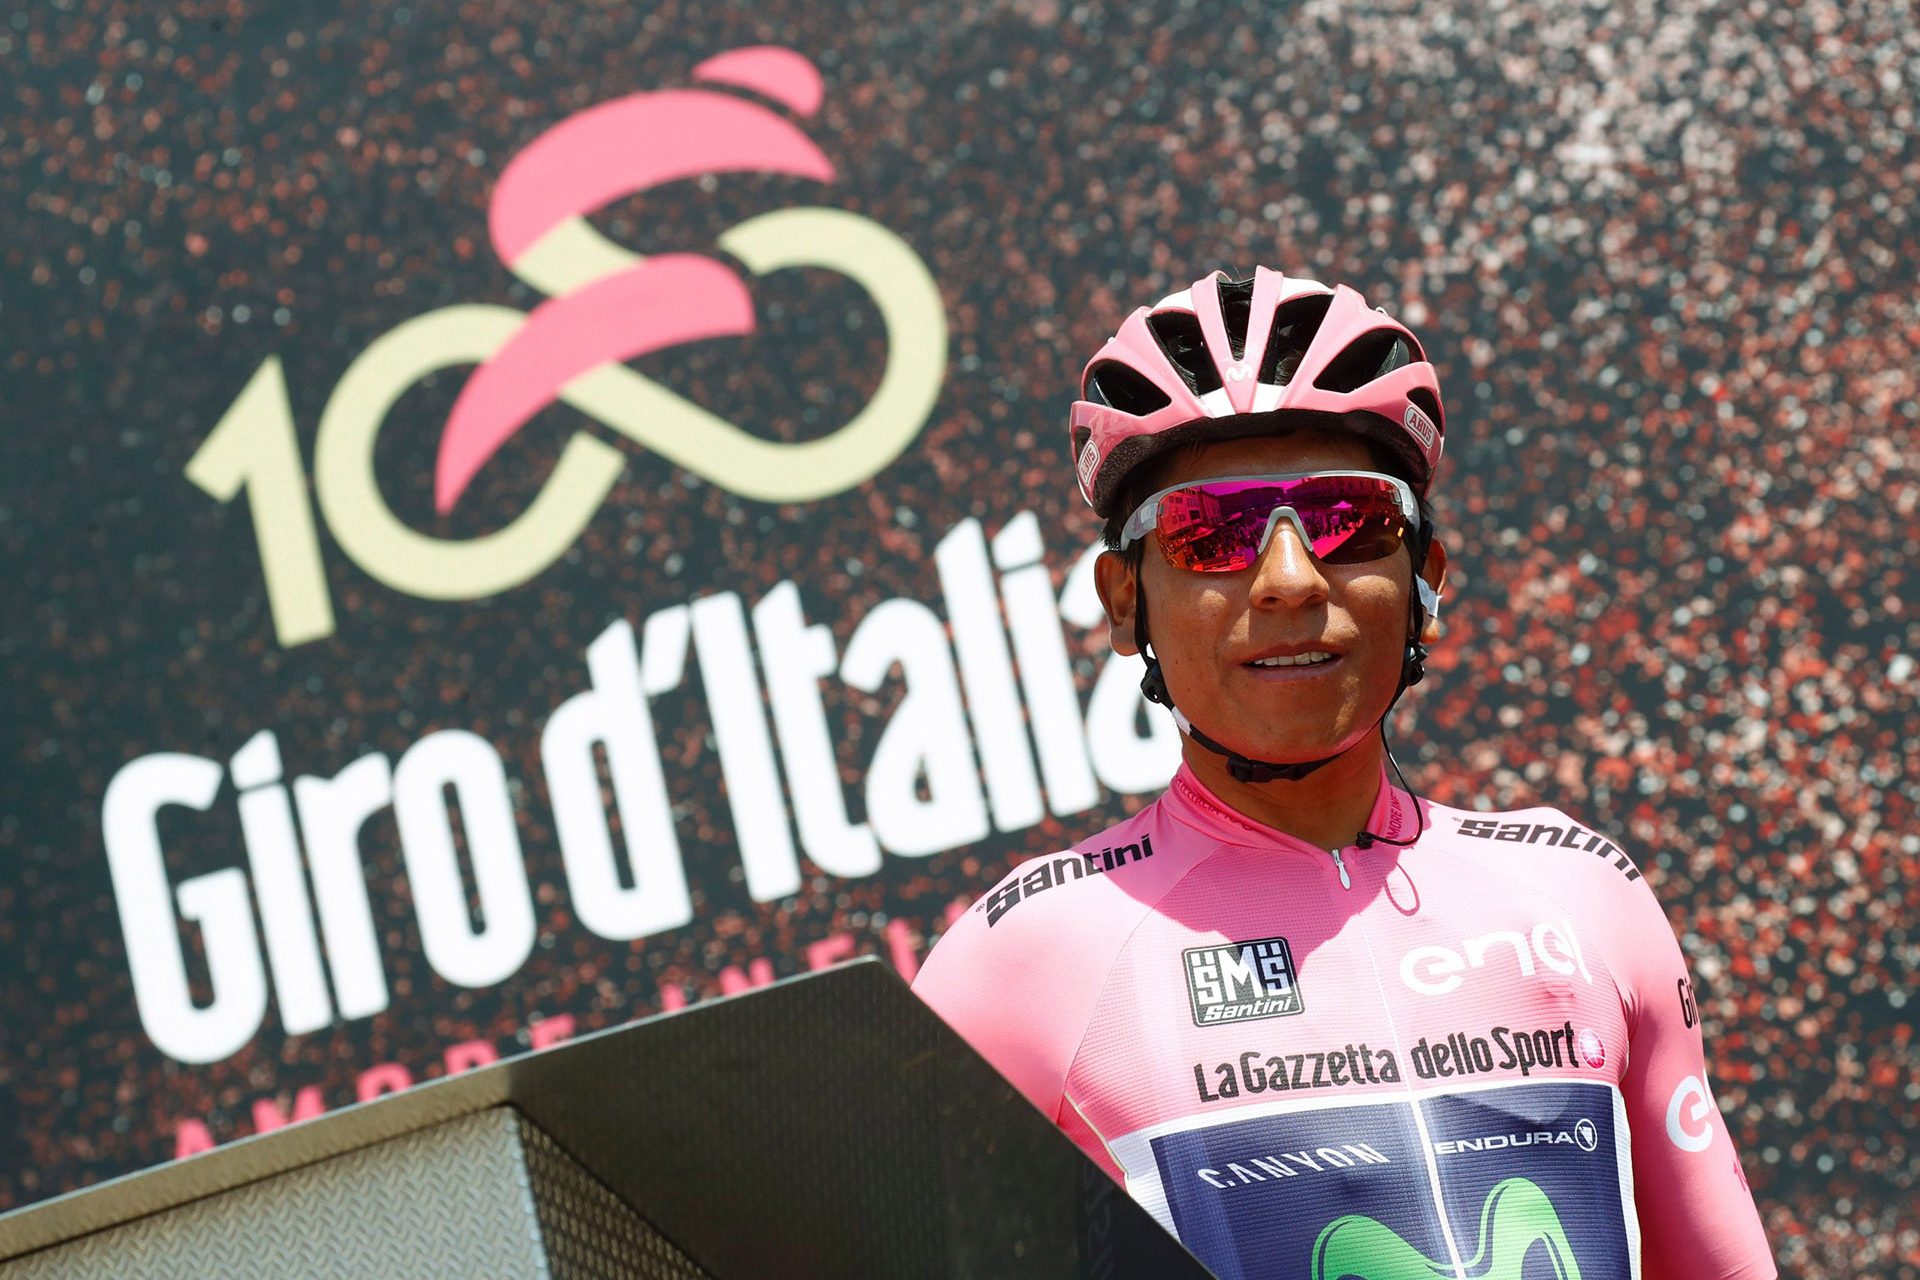 Eerste grote doel: de Giro d'Italia